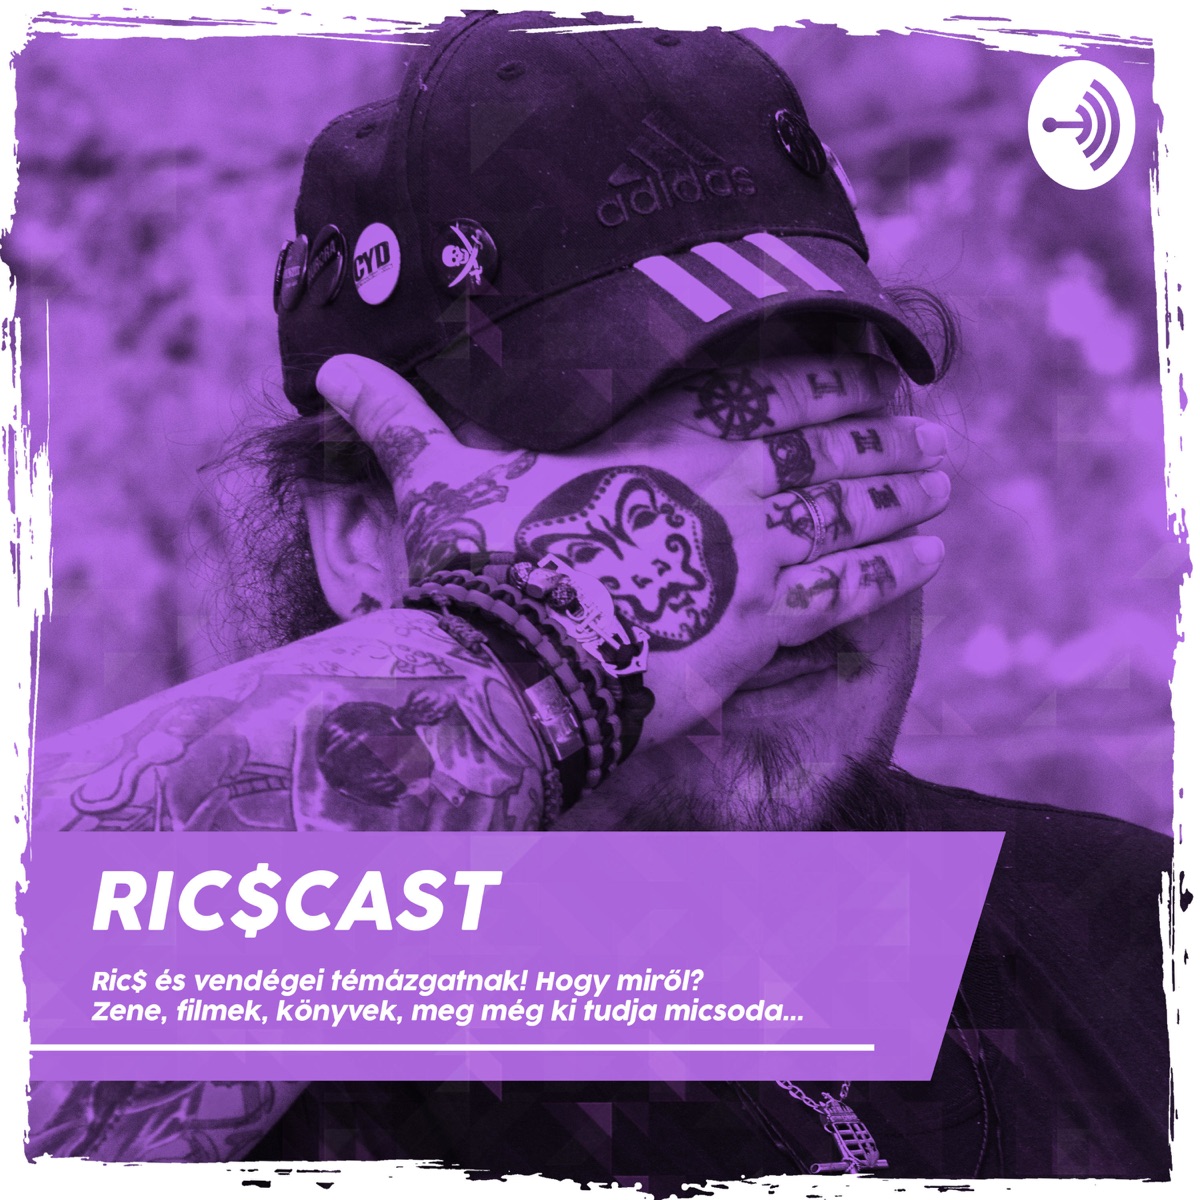 RicSCast – Podcast – Podtail